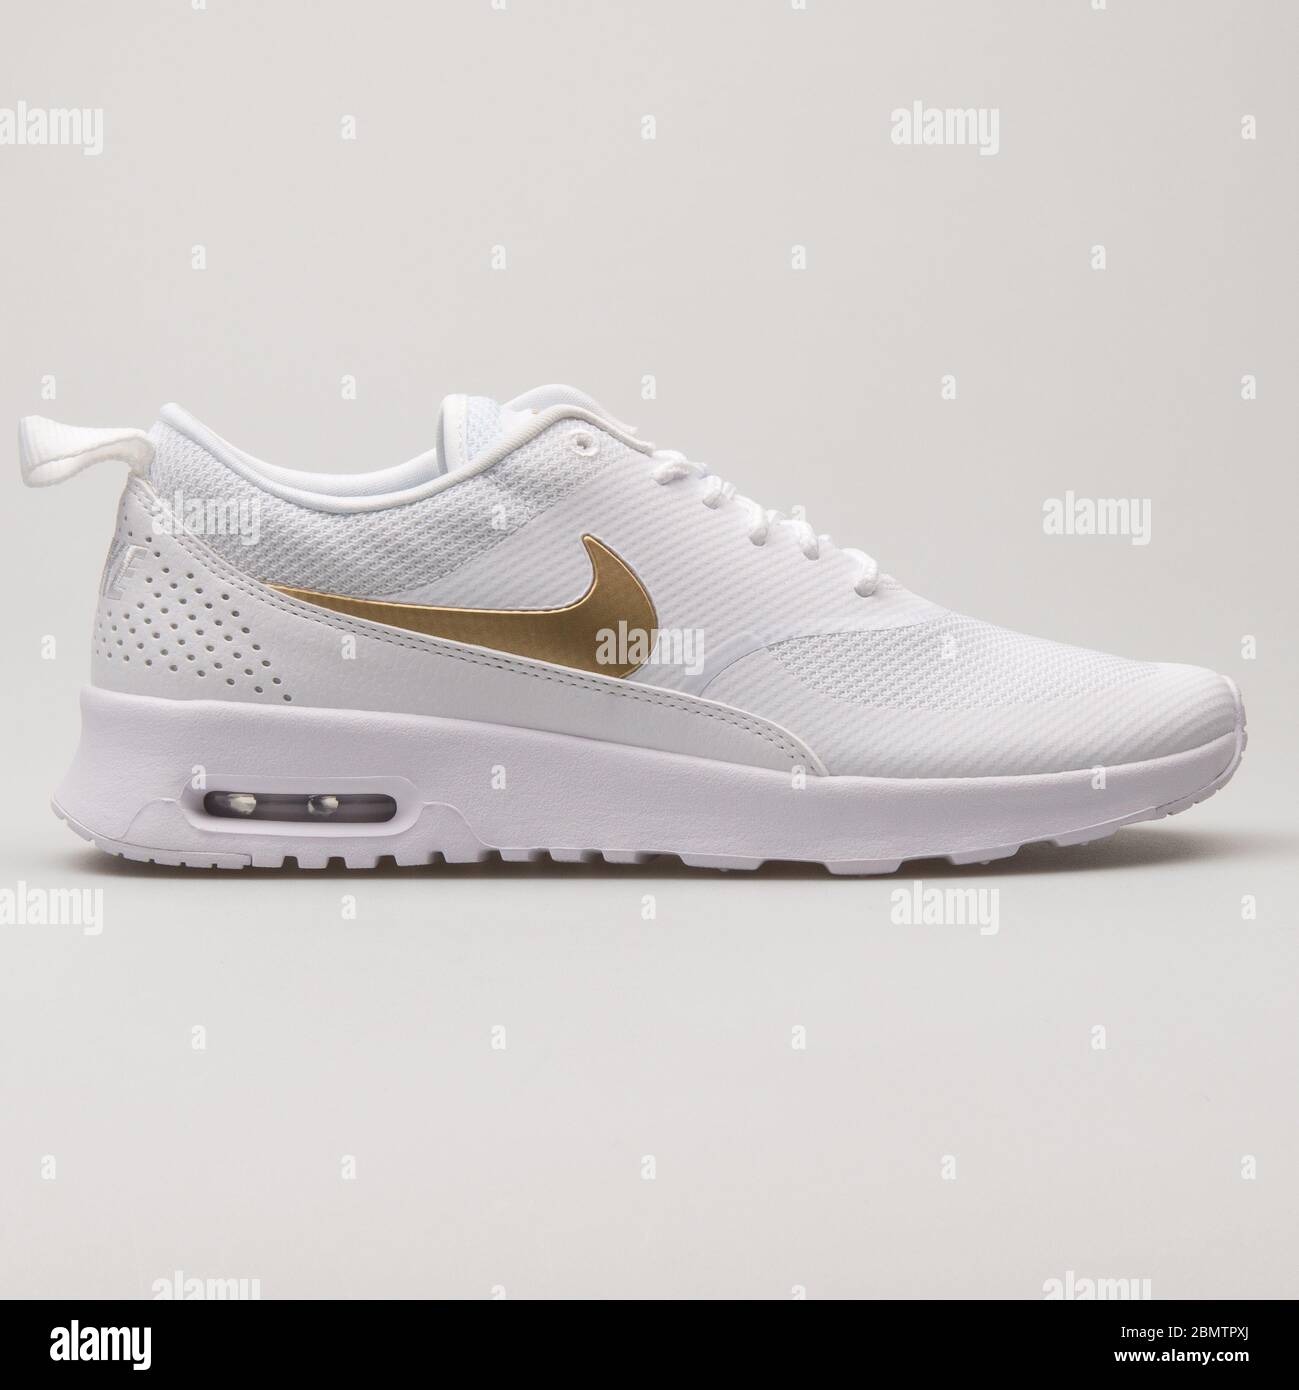 WIEN, ÖSTERREICH - 27. MAI 2018: Nike Air Max Thea Sneaker in Weiß und  Metallic Gold auf weißem Hintergrund Stockfotografie - Alamy